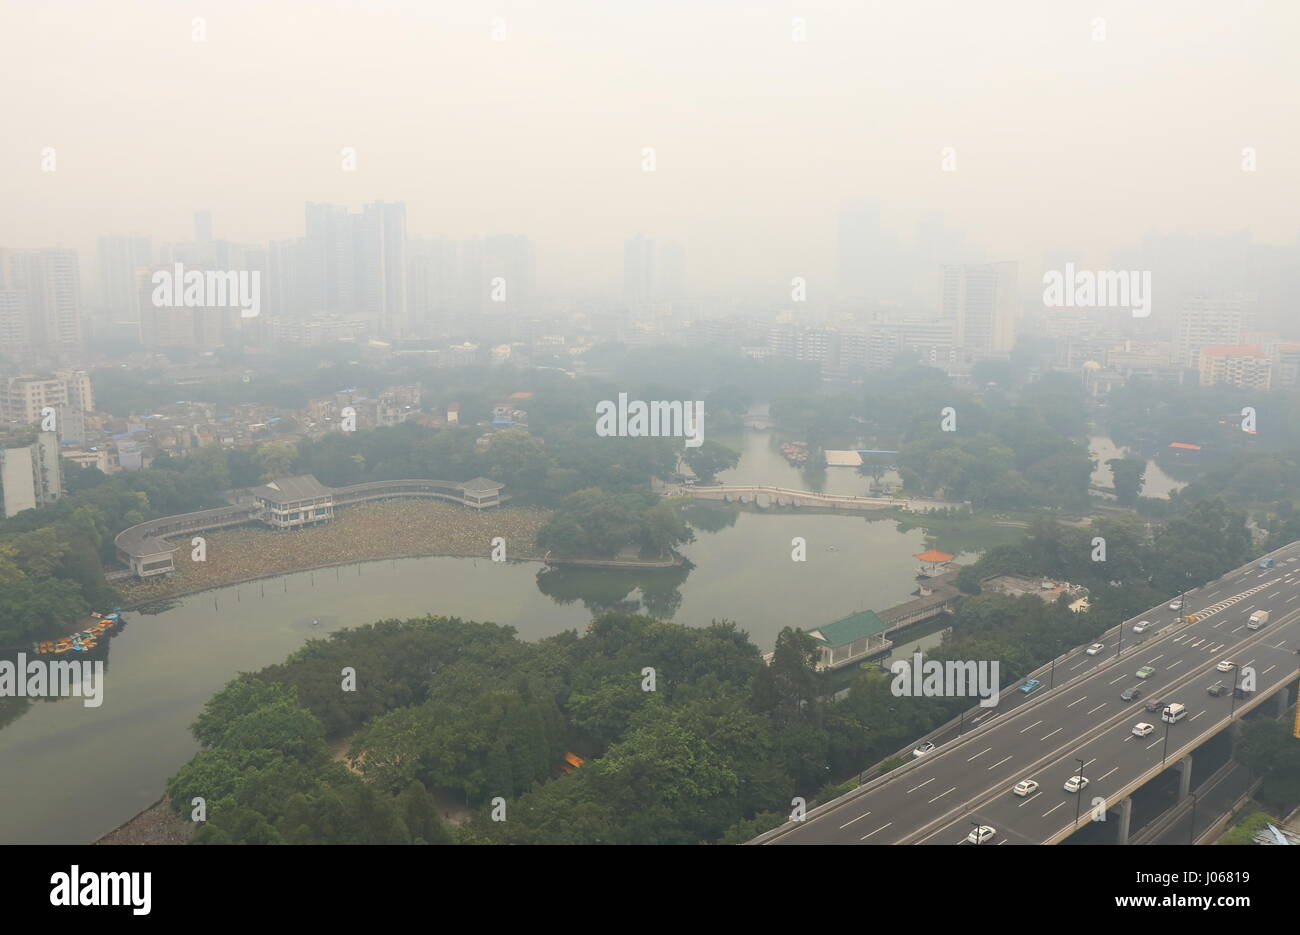 La pollution atmosphérique dans la ville de Guangzhou Guangzhou en Chine. Banque D'Images